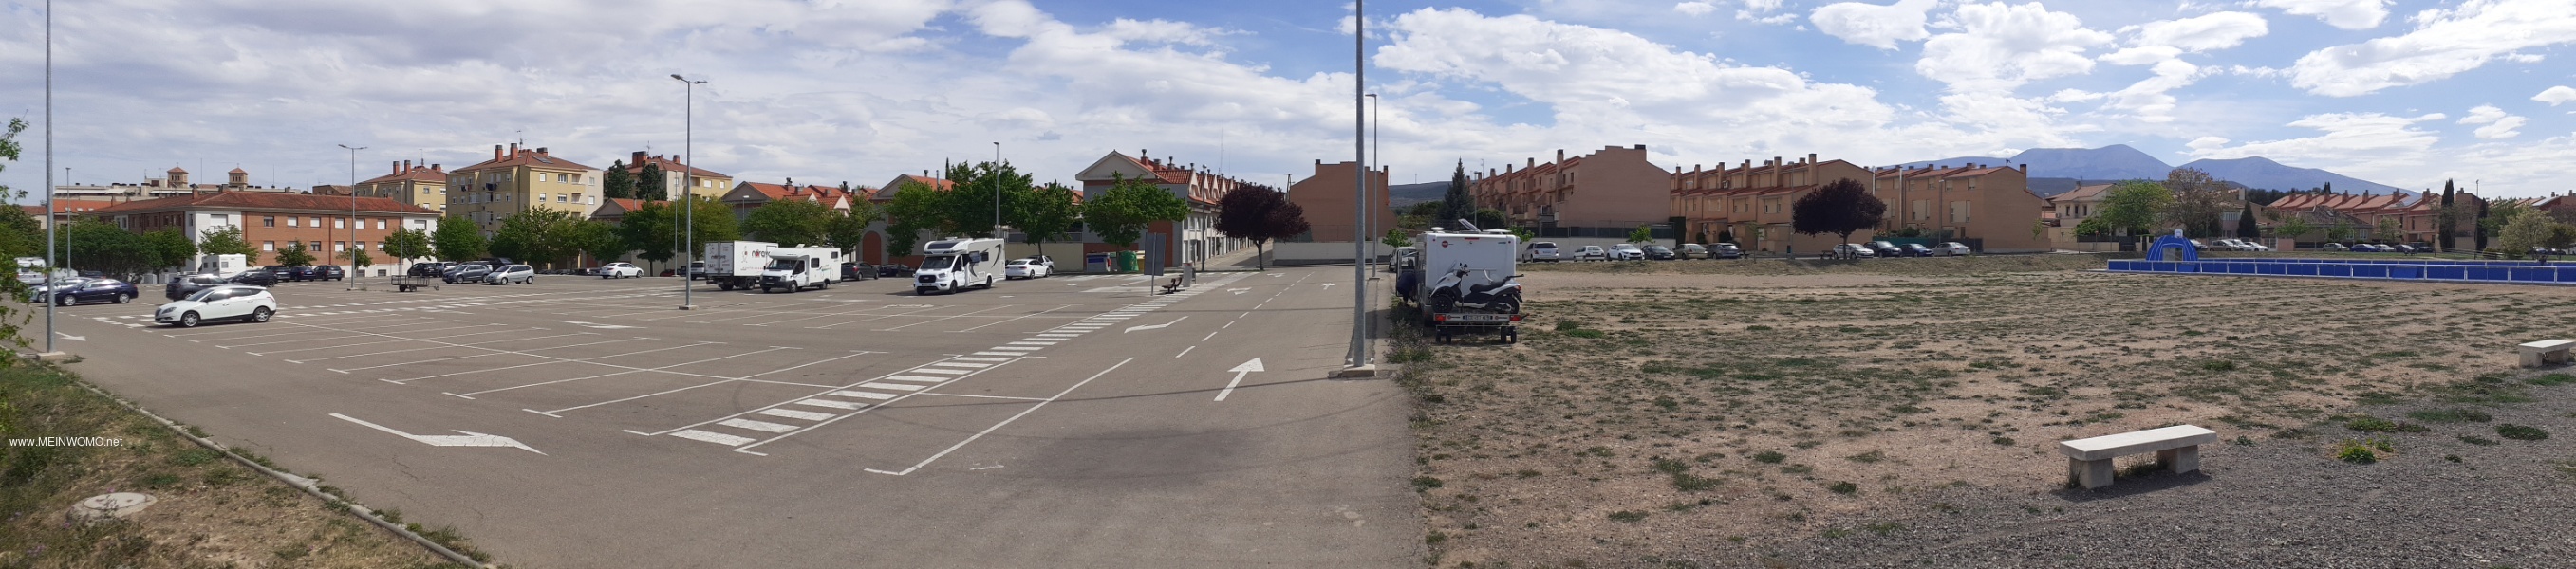 Parkplatz, Stellplatz und Freiflche die auch genutzt werden kann.